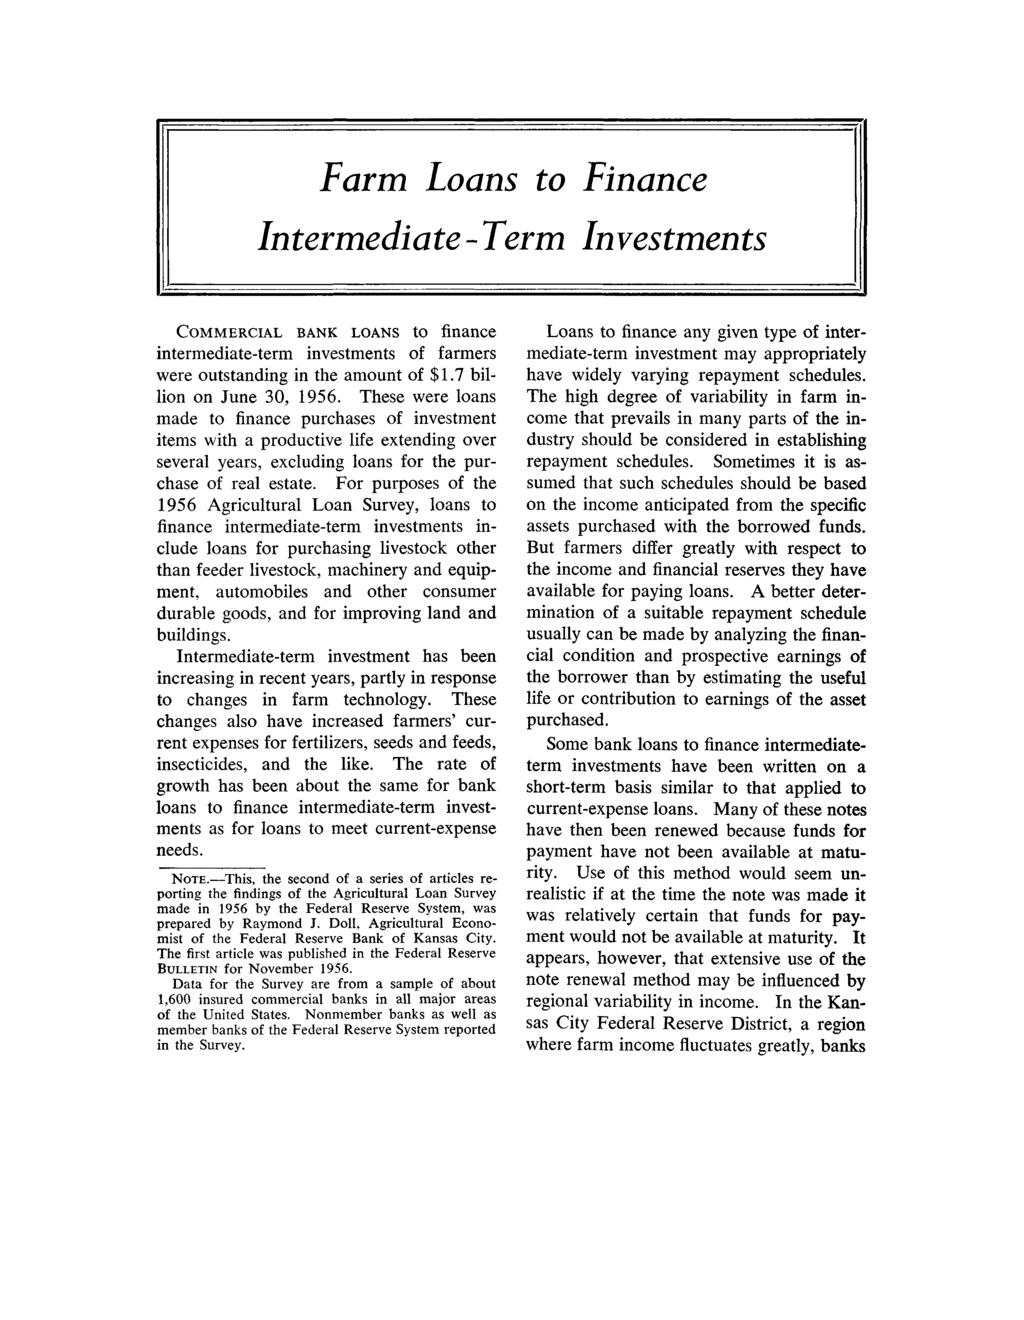 Farm Loans to Finance Intermediate-Term Investments COMMERCIAL BANK LOANS to finance intermediate-term investments farmers were outsting in the amount $. billion on June, 5.